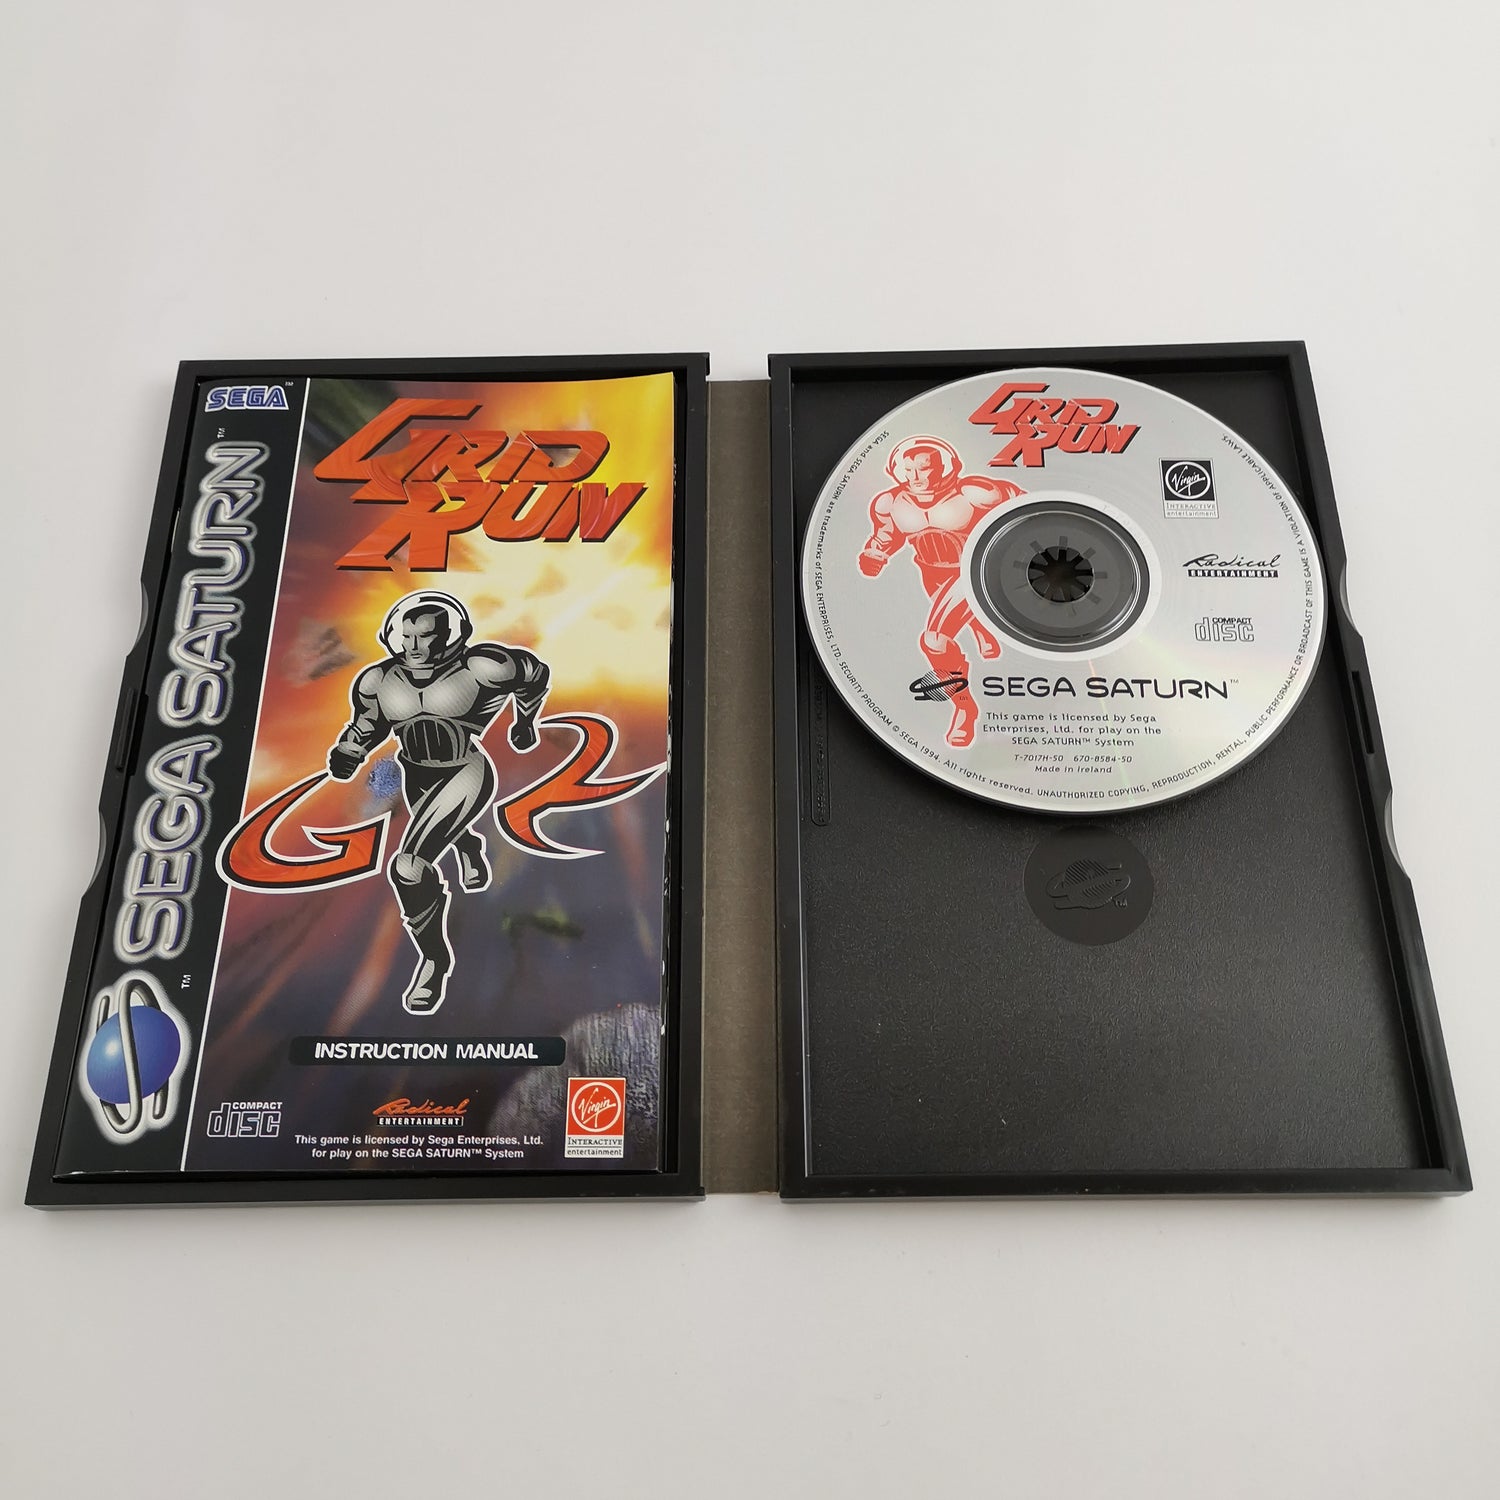 Sega Saturn Game : Grid Run | SegaSaturn - original packaging PAL version